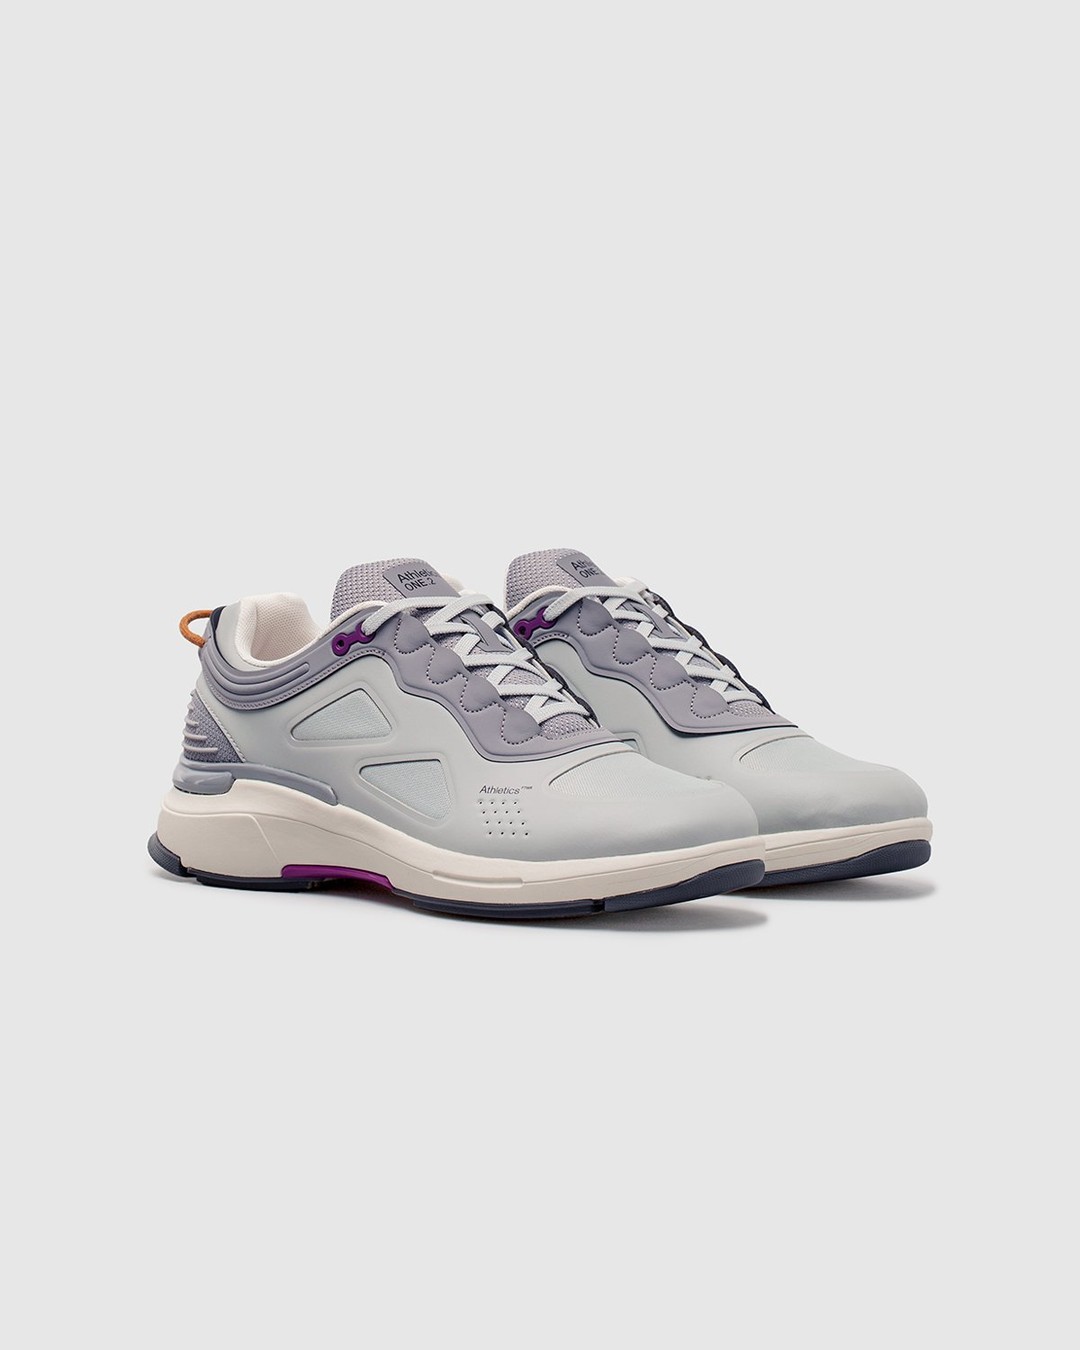 Athletics Footwear – ONE.2 Grey / Formal Grey / G3 Grape - Low Top Sneakers - Grey - Image 2